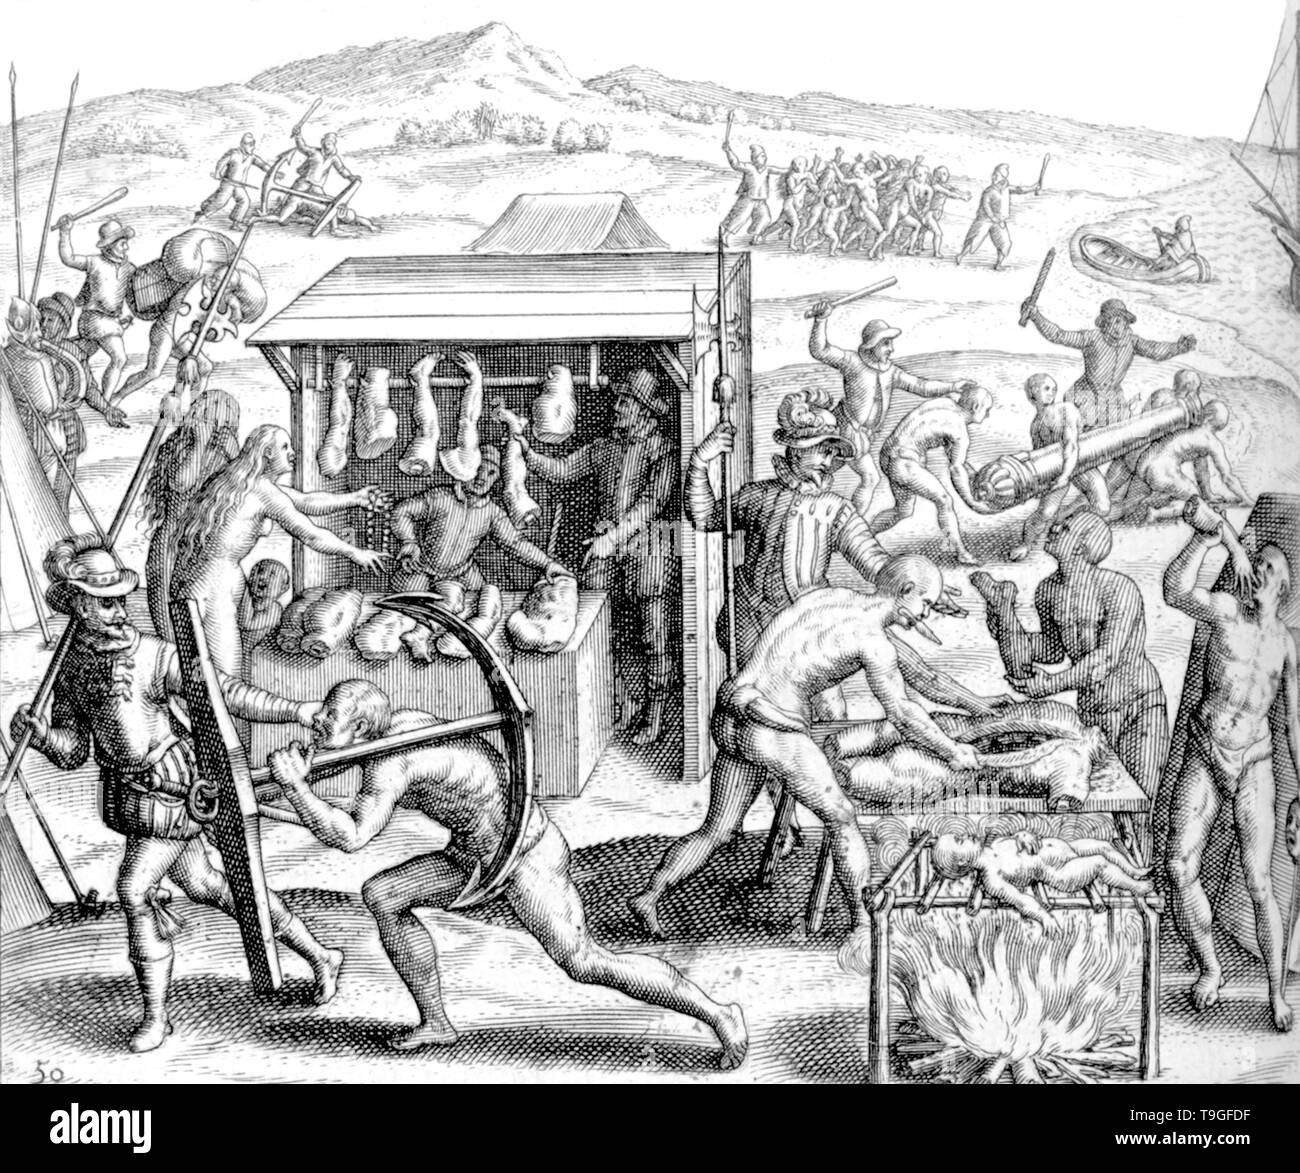 Grabado de Theodor de Bry. Españoles descuartizanos indígenas. Biblioteca Virtual Miguel de Cervantes. Stock Photo